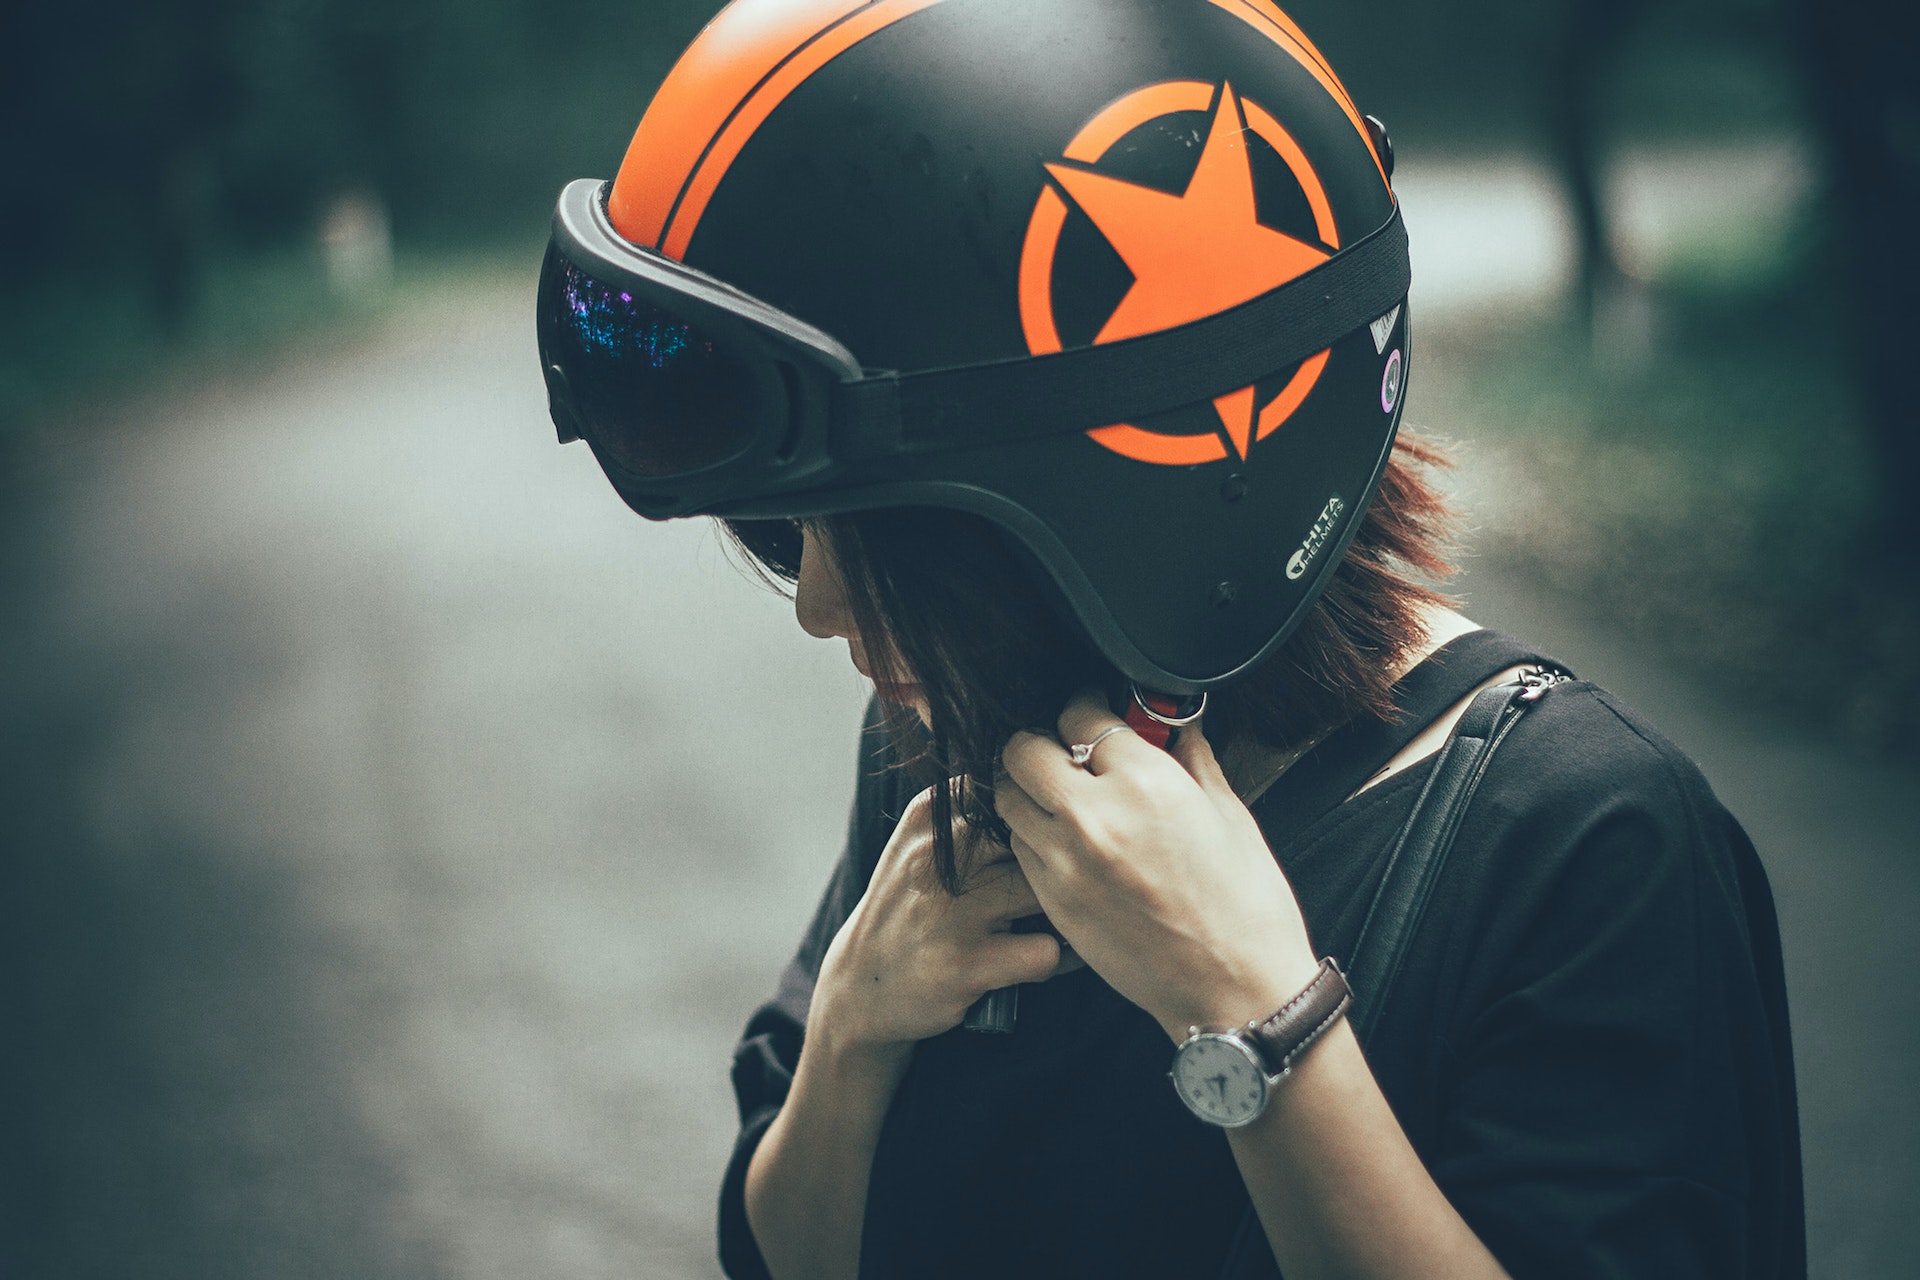 Trouver un casque de moto homologué : comment bien choisir ?